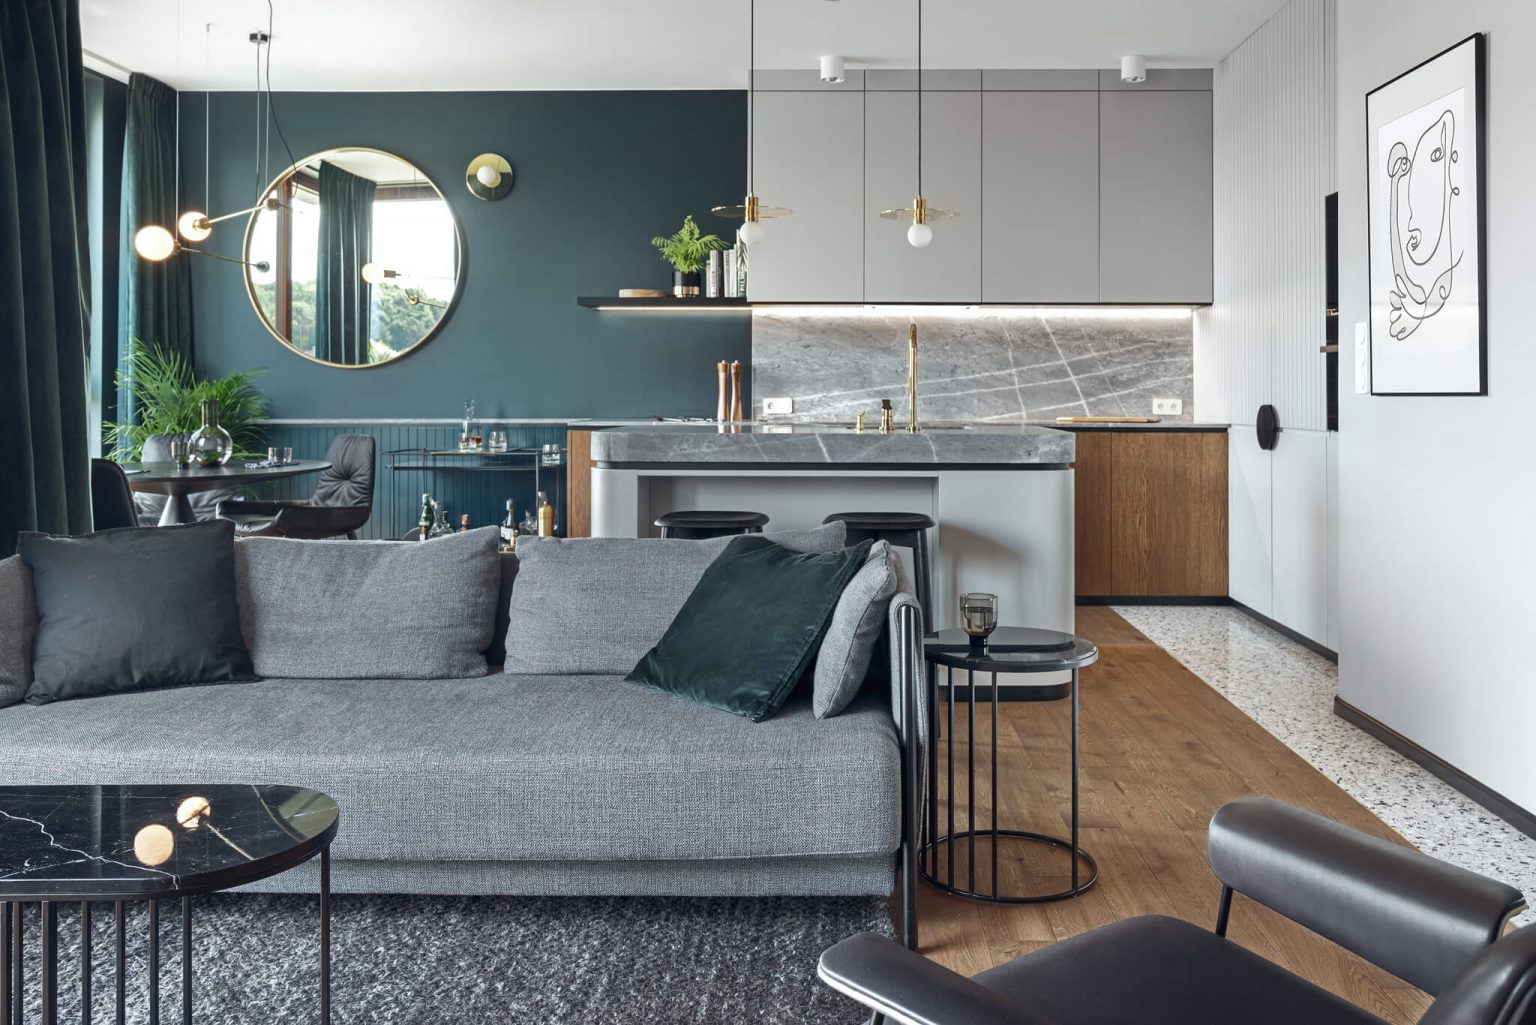 Apartment in Gdańsk by Raca Architekci | Wowow Home Magazine